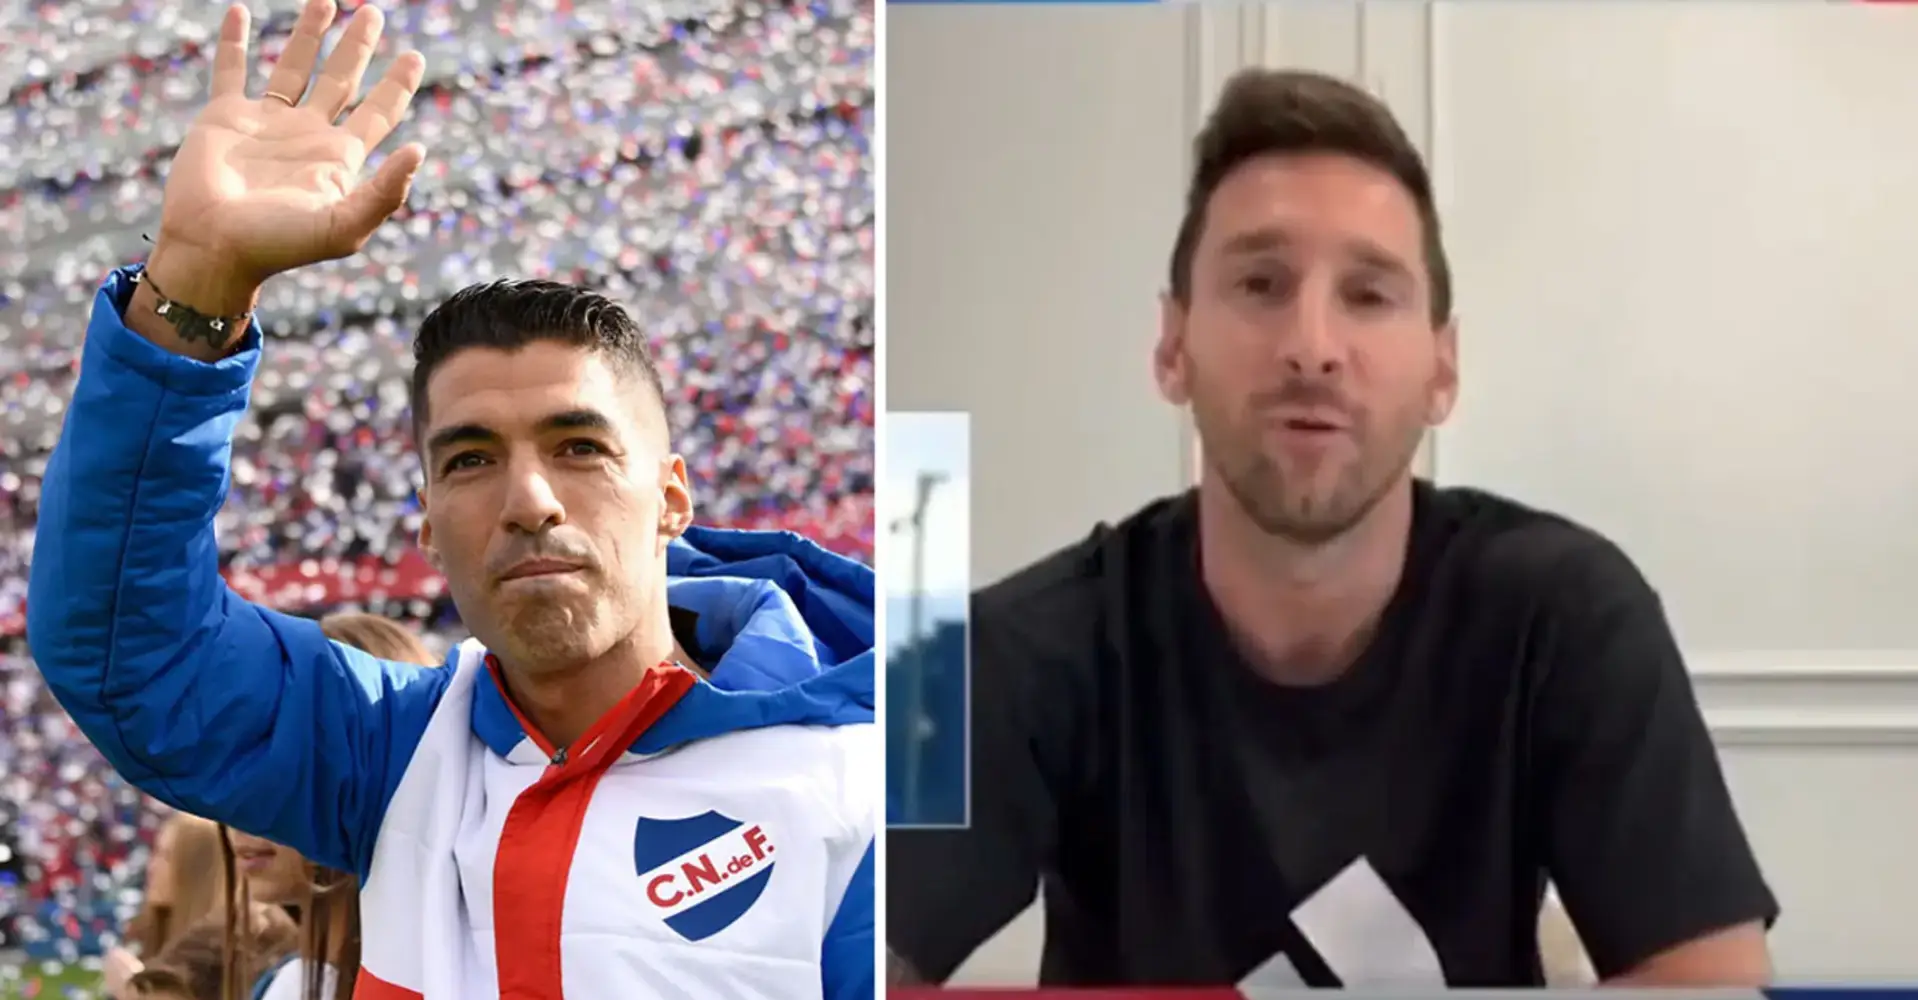 Messi sendet eine rührende Nachricht an Suarez nach seinem Wechsel zum Jugendklub